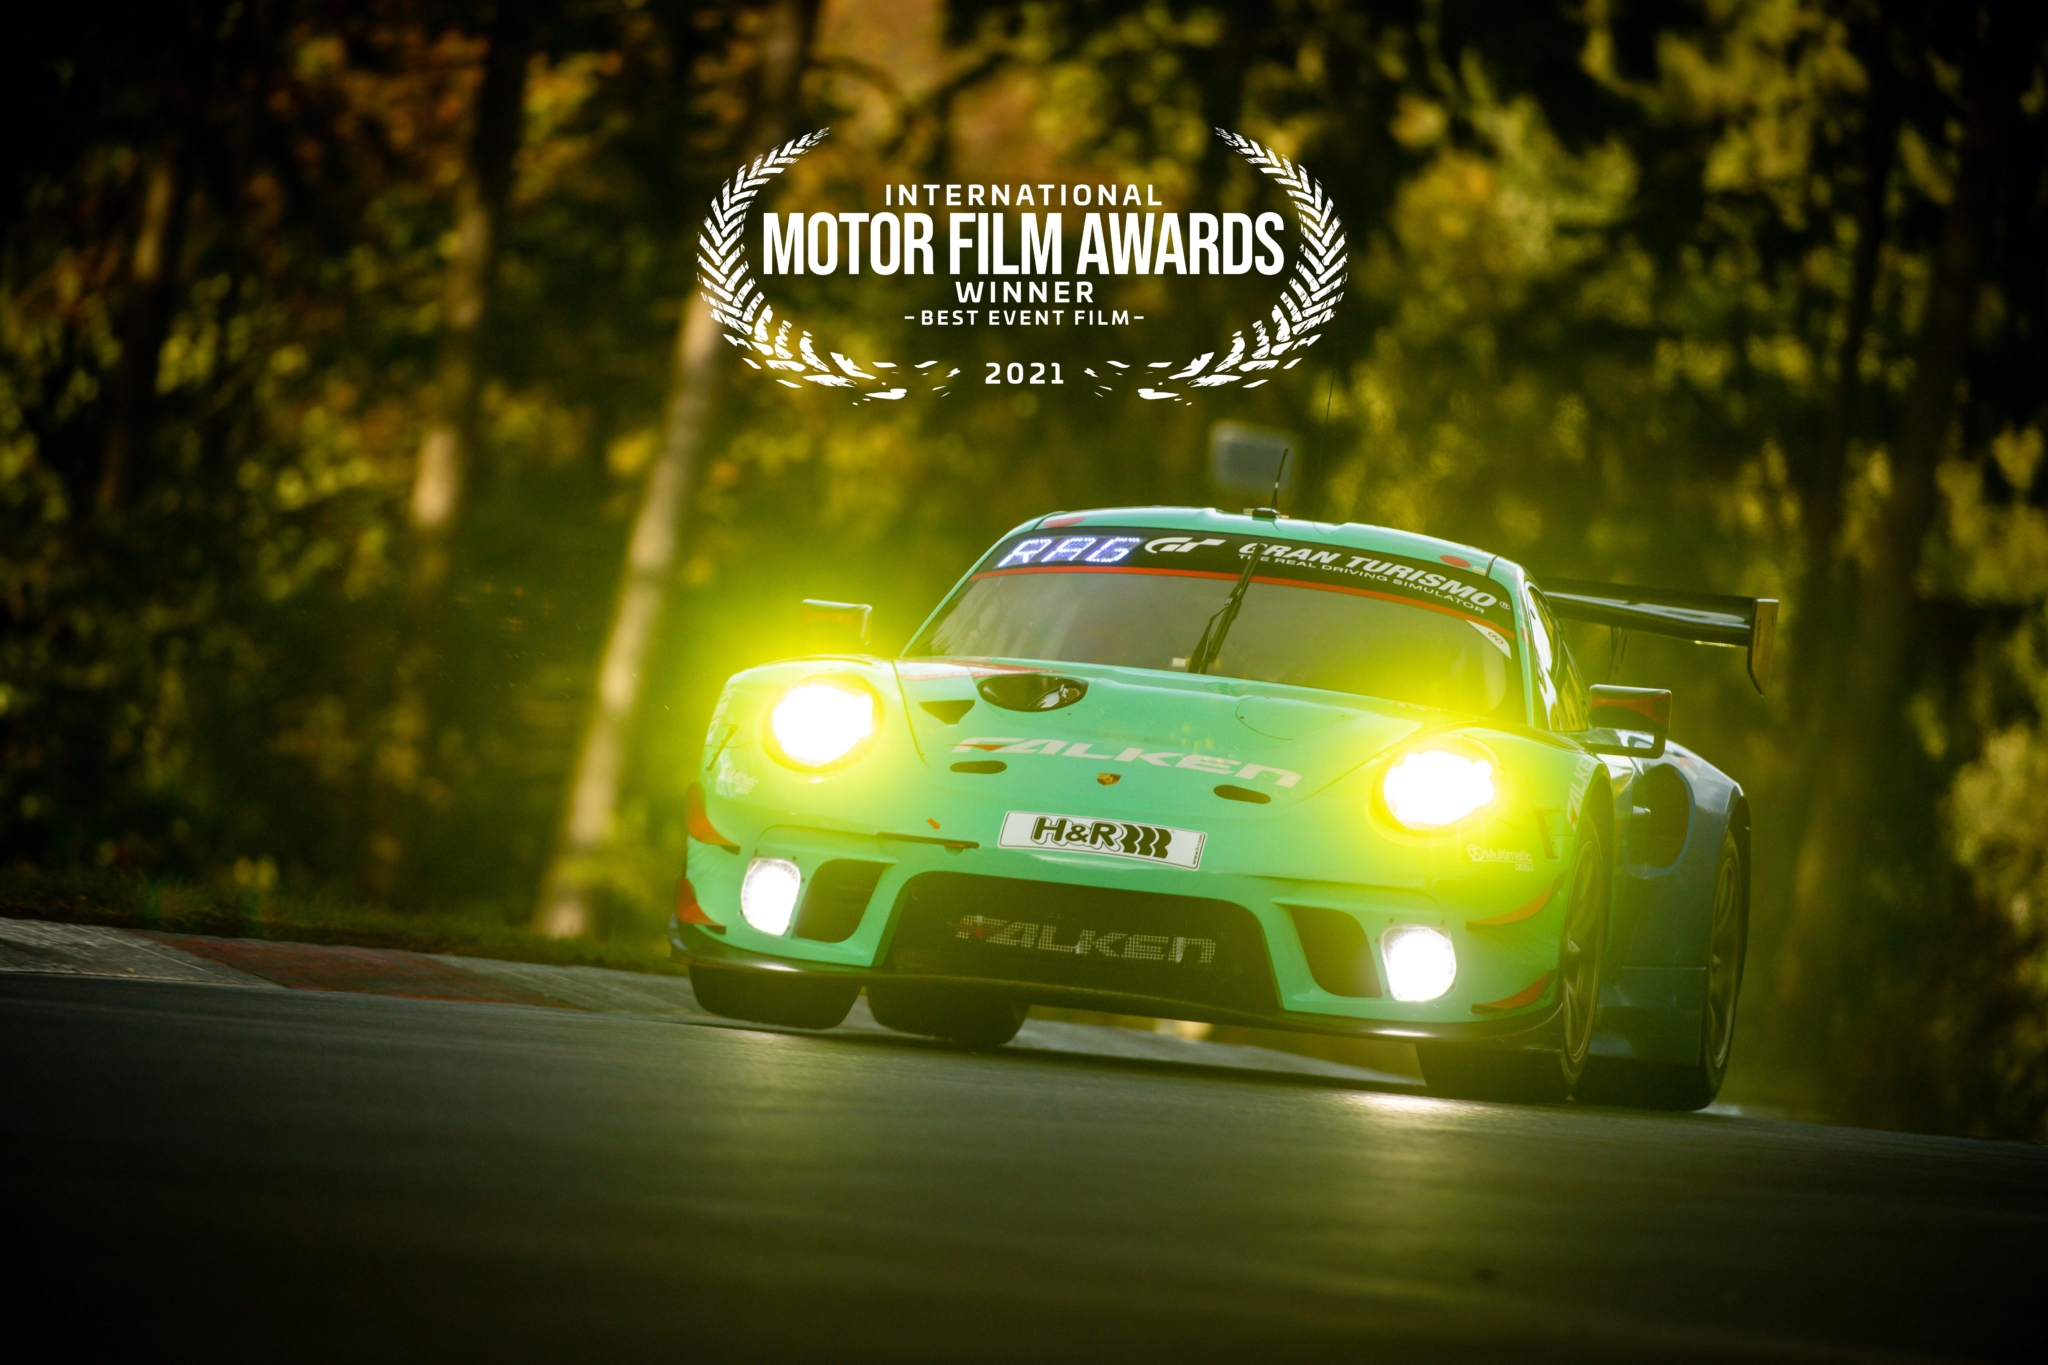 Falken wins Best Event Film at International Motor Film Awards